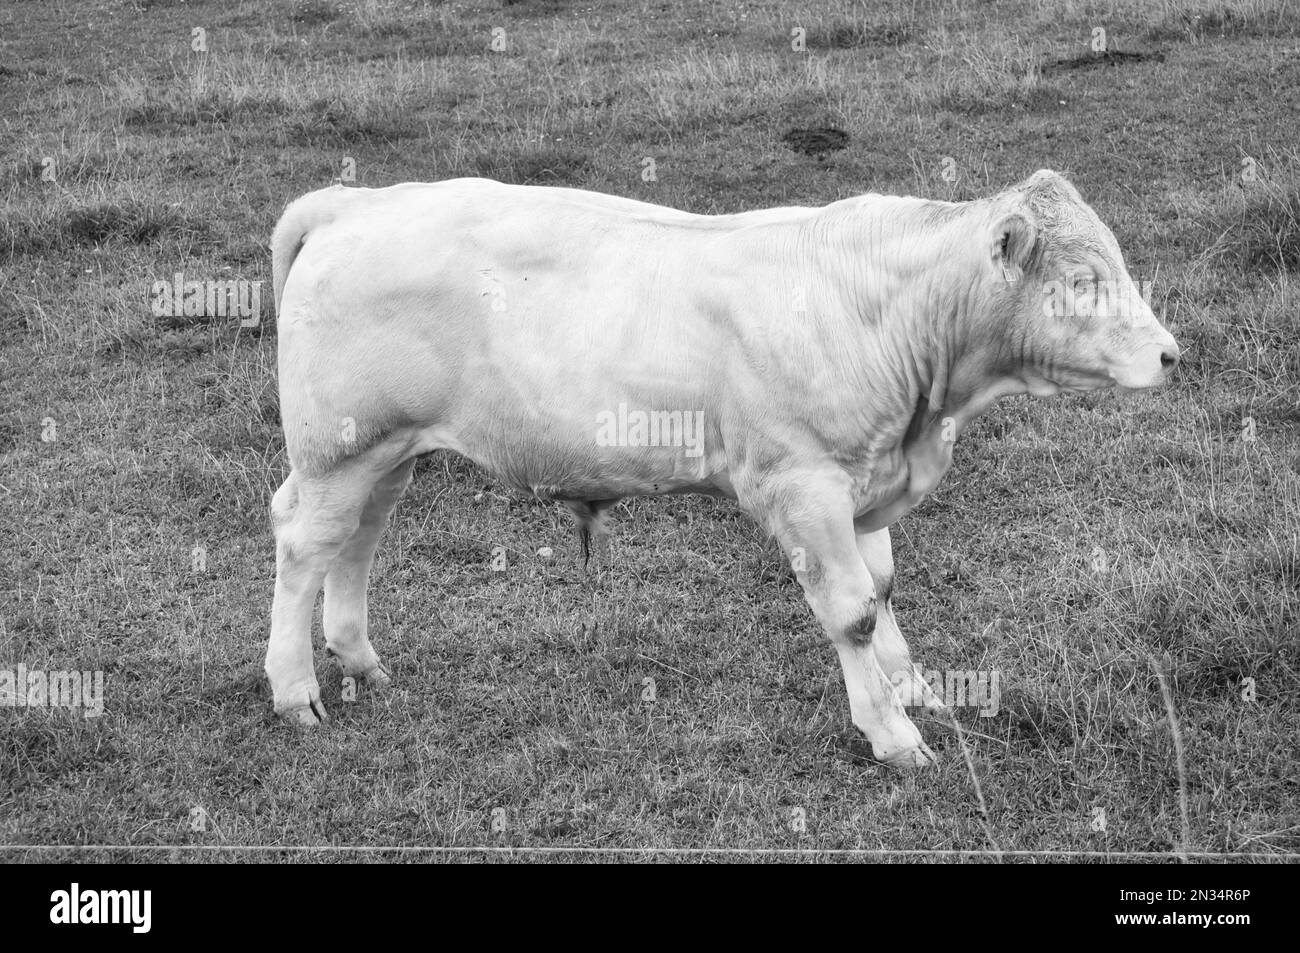 Weißes Rinderkalb auf der Wiese in schwarzem Weiß aufgenommen. Nutztiere für die Fleischerzeugung. Stärkeres Huftier. Foto eines Tieres aus der Landwirtschaft Stockfoto